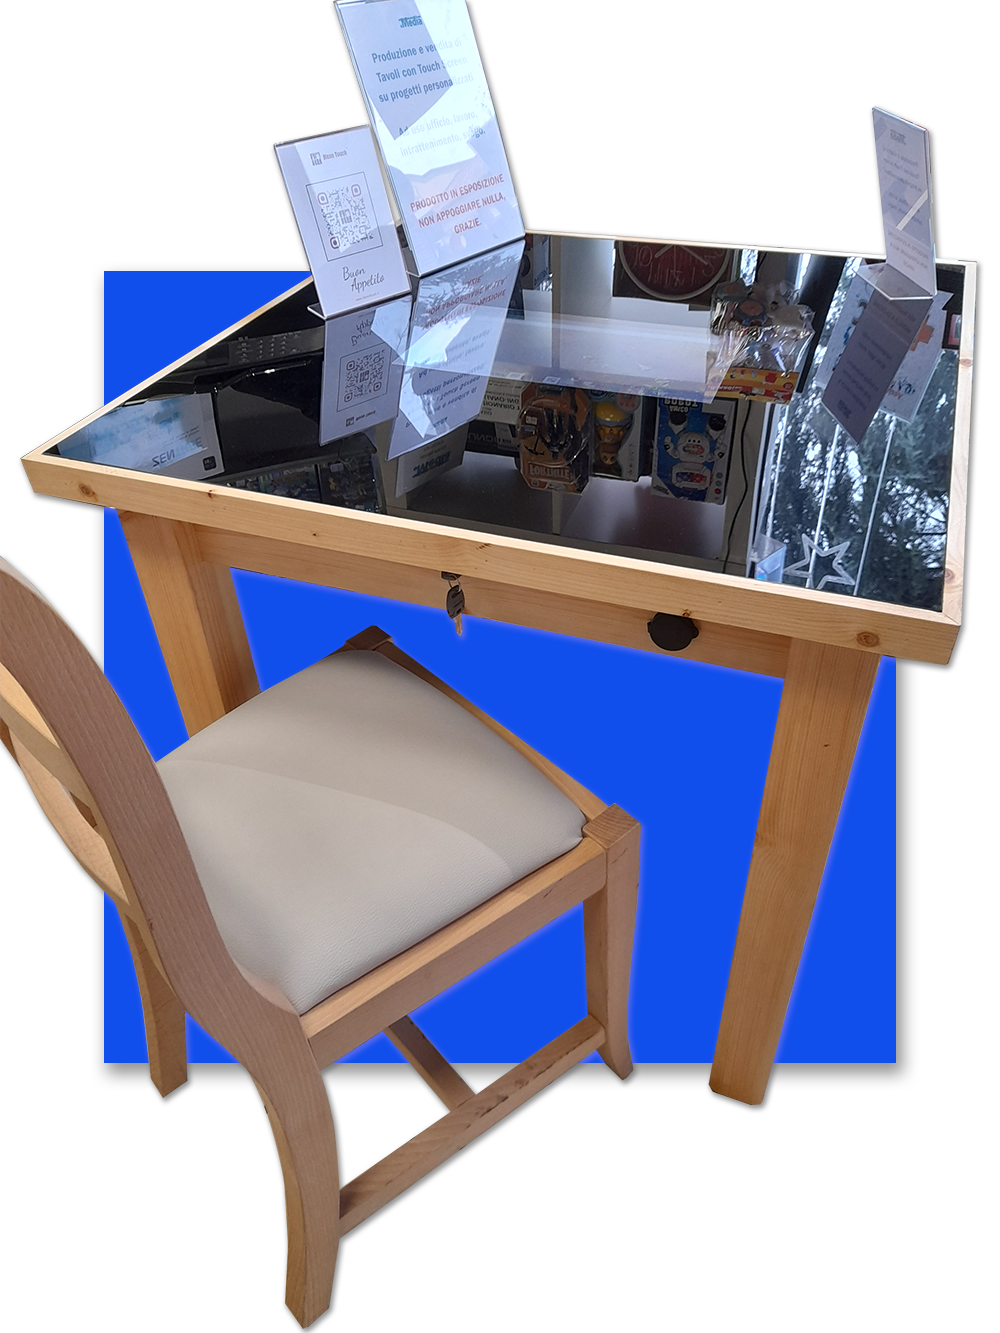 tecnotouch smart tavolo touch interattivo bar pub ristorante gioco treviglio media scenes